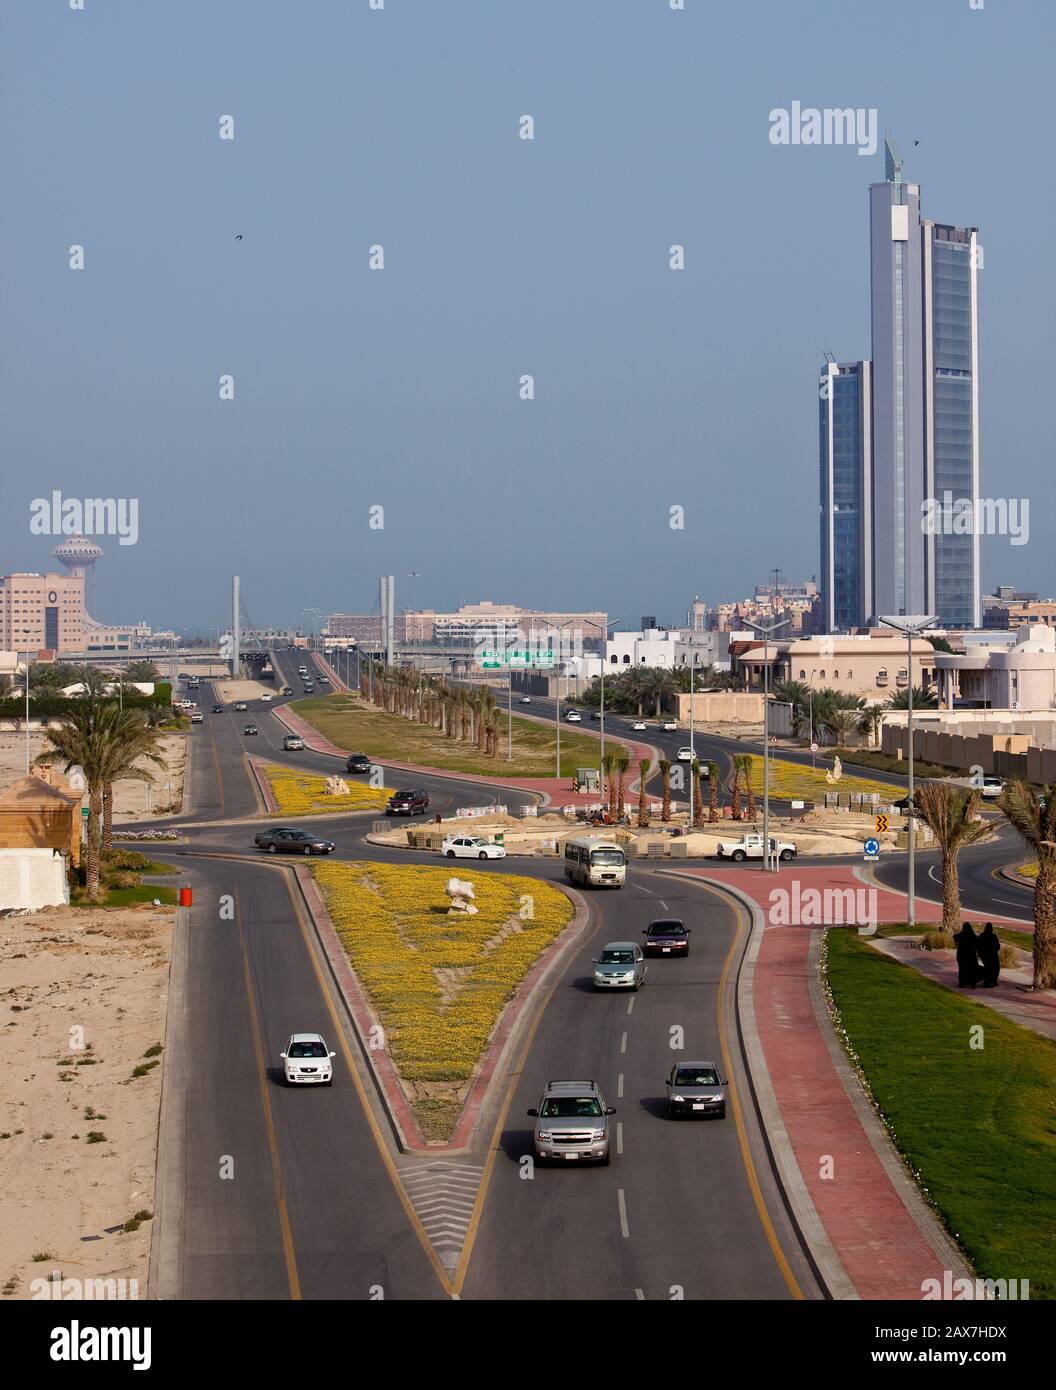 Al Khobar city in Eastern Province, Saudi Arabia. Stock Photo